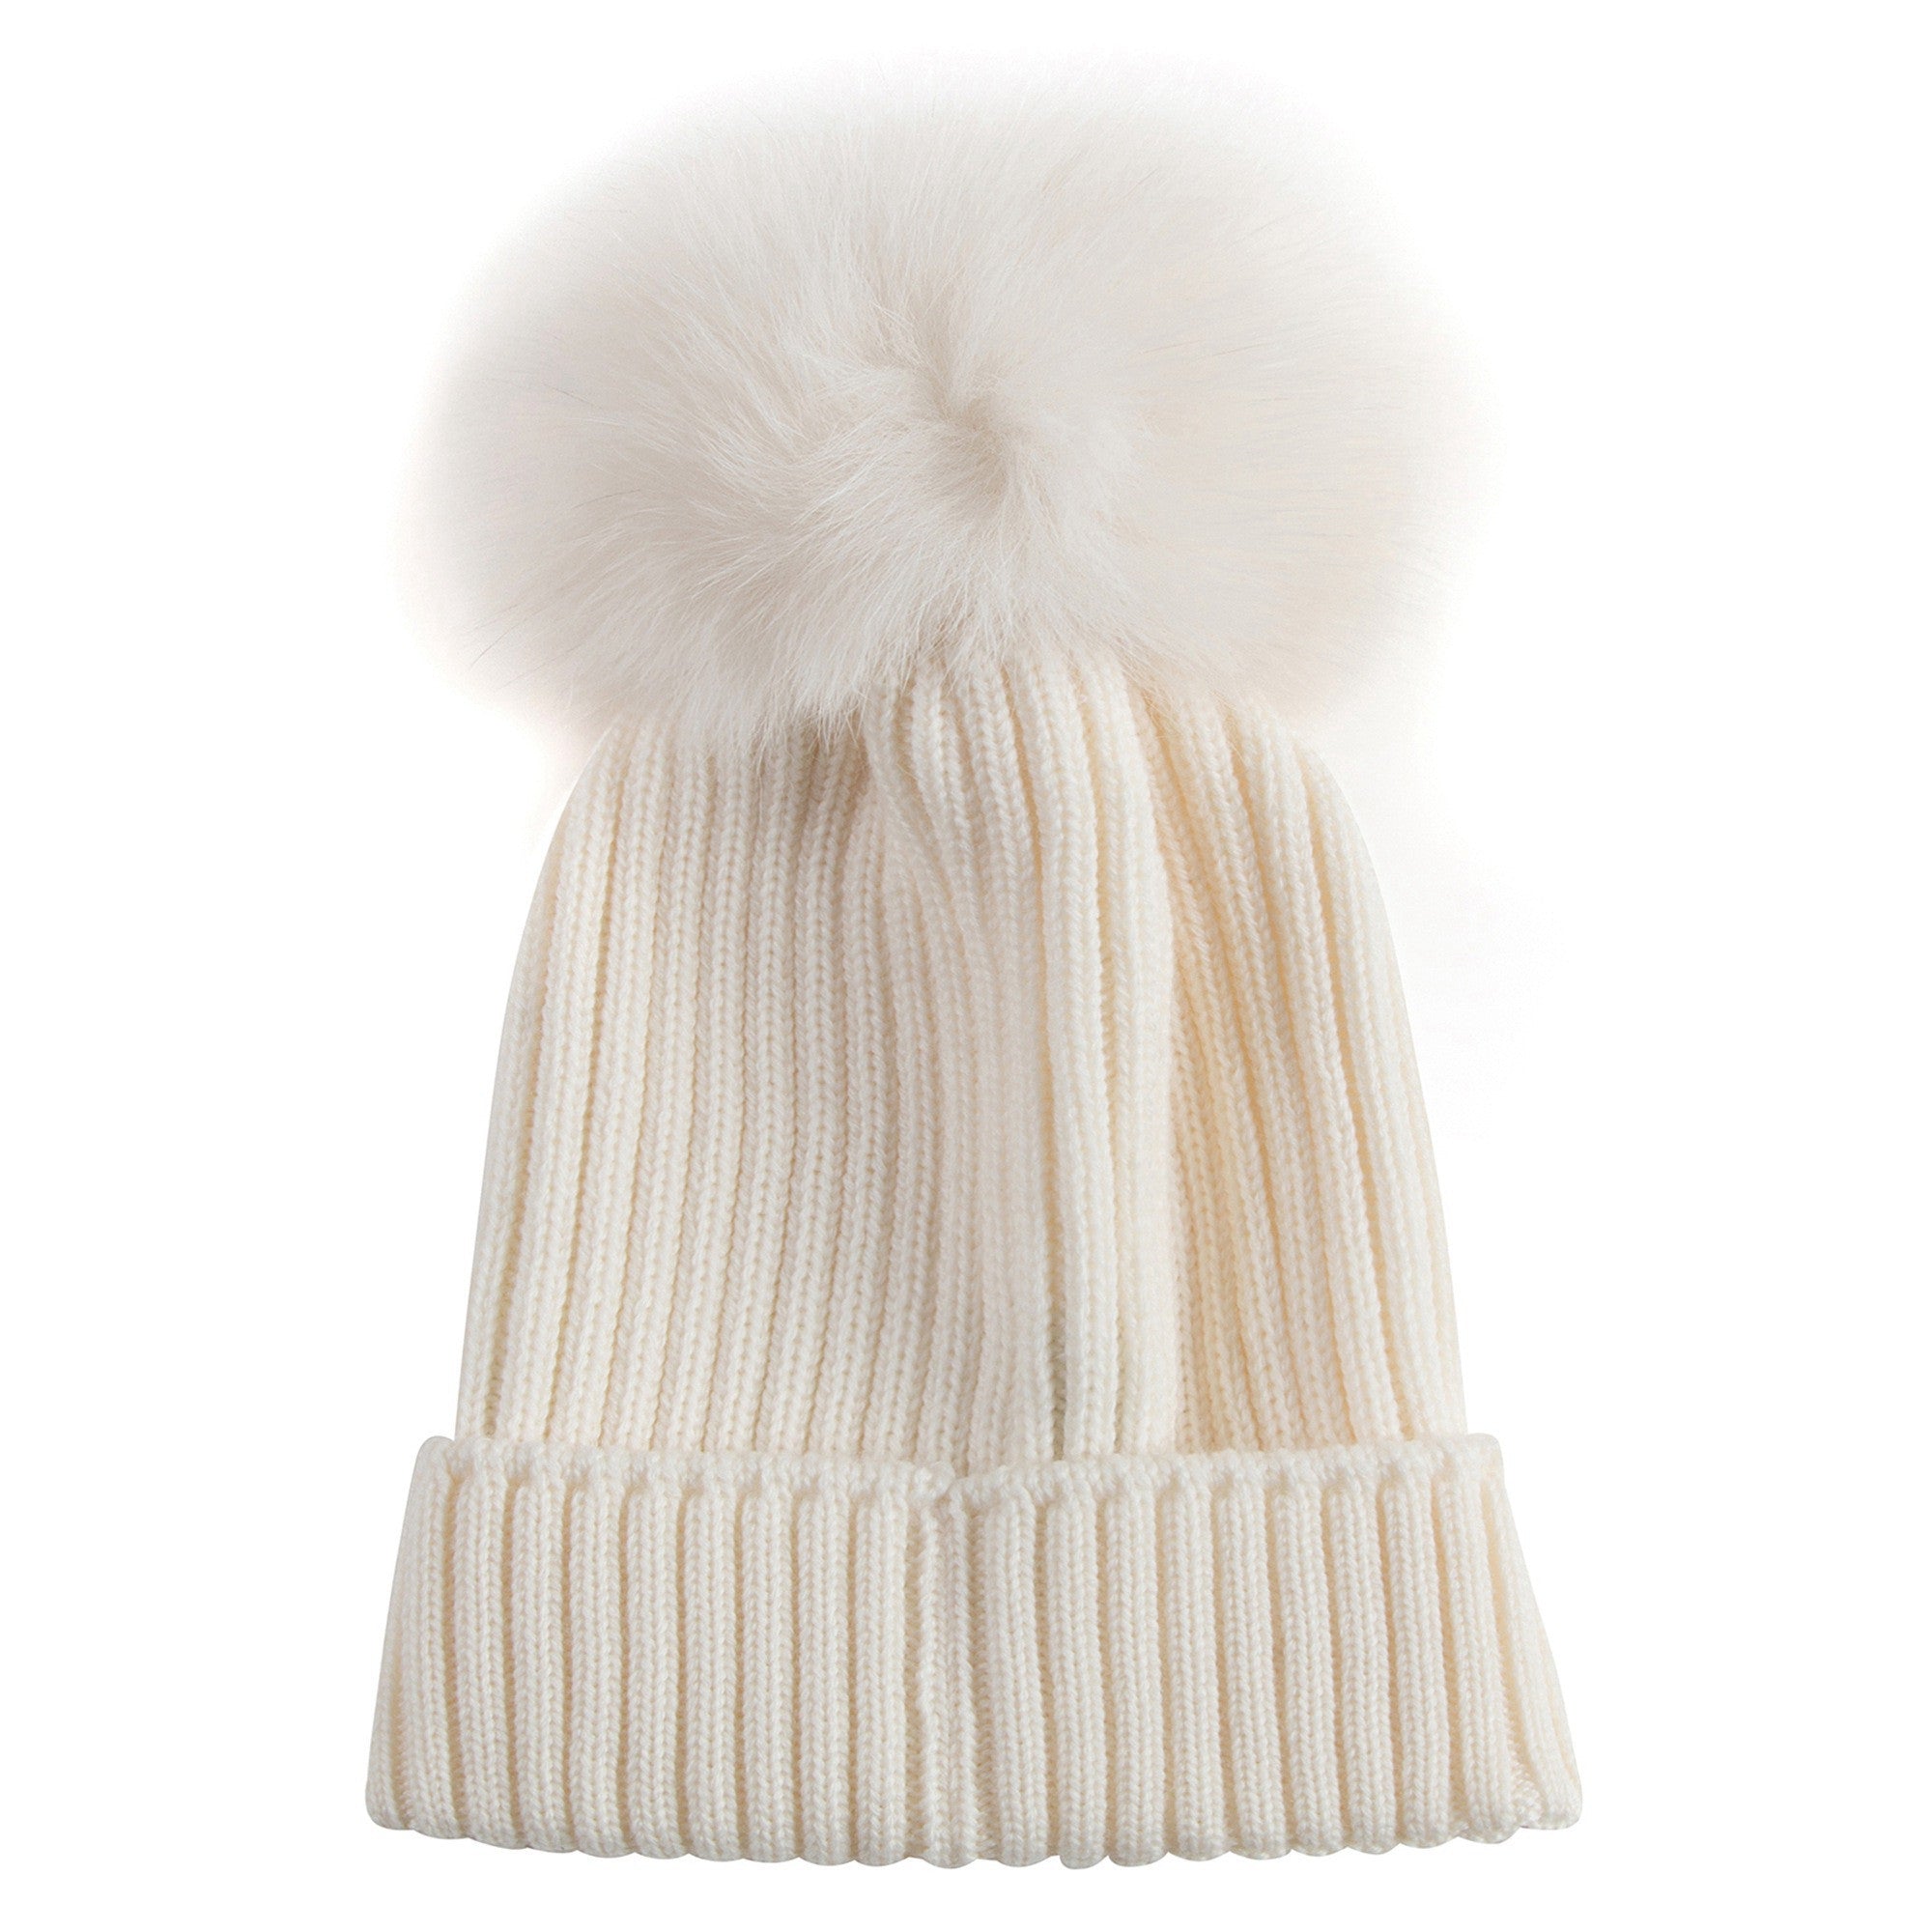 Boys & Girls Ivory Knitted Hat With Fur Pom-Pom Trim